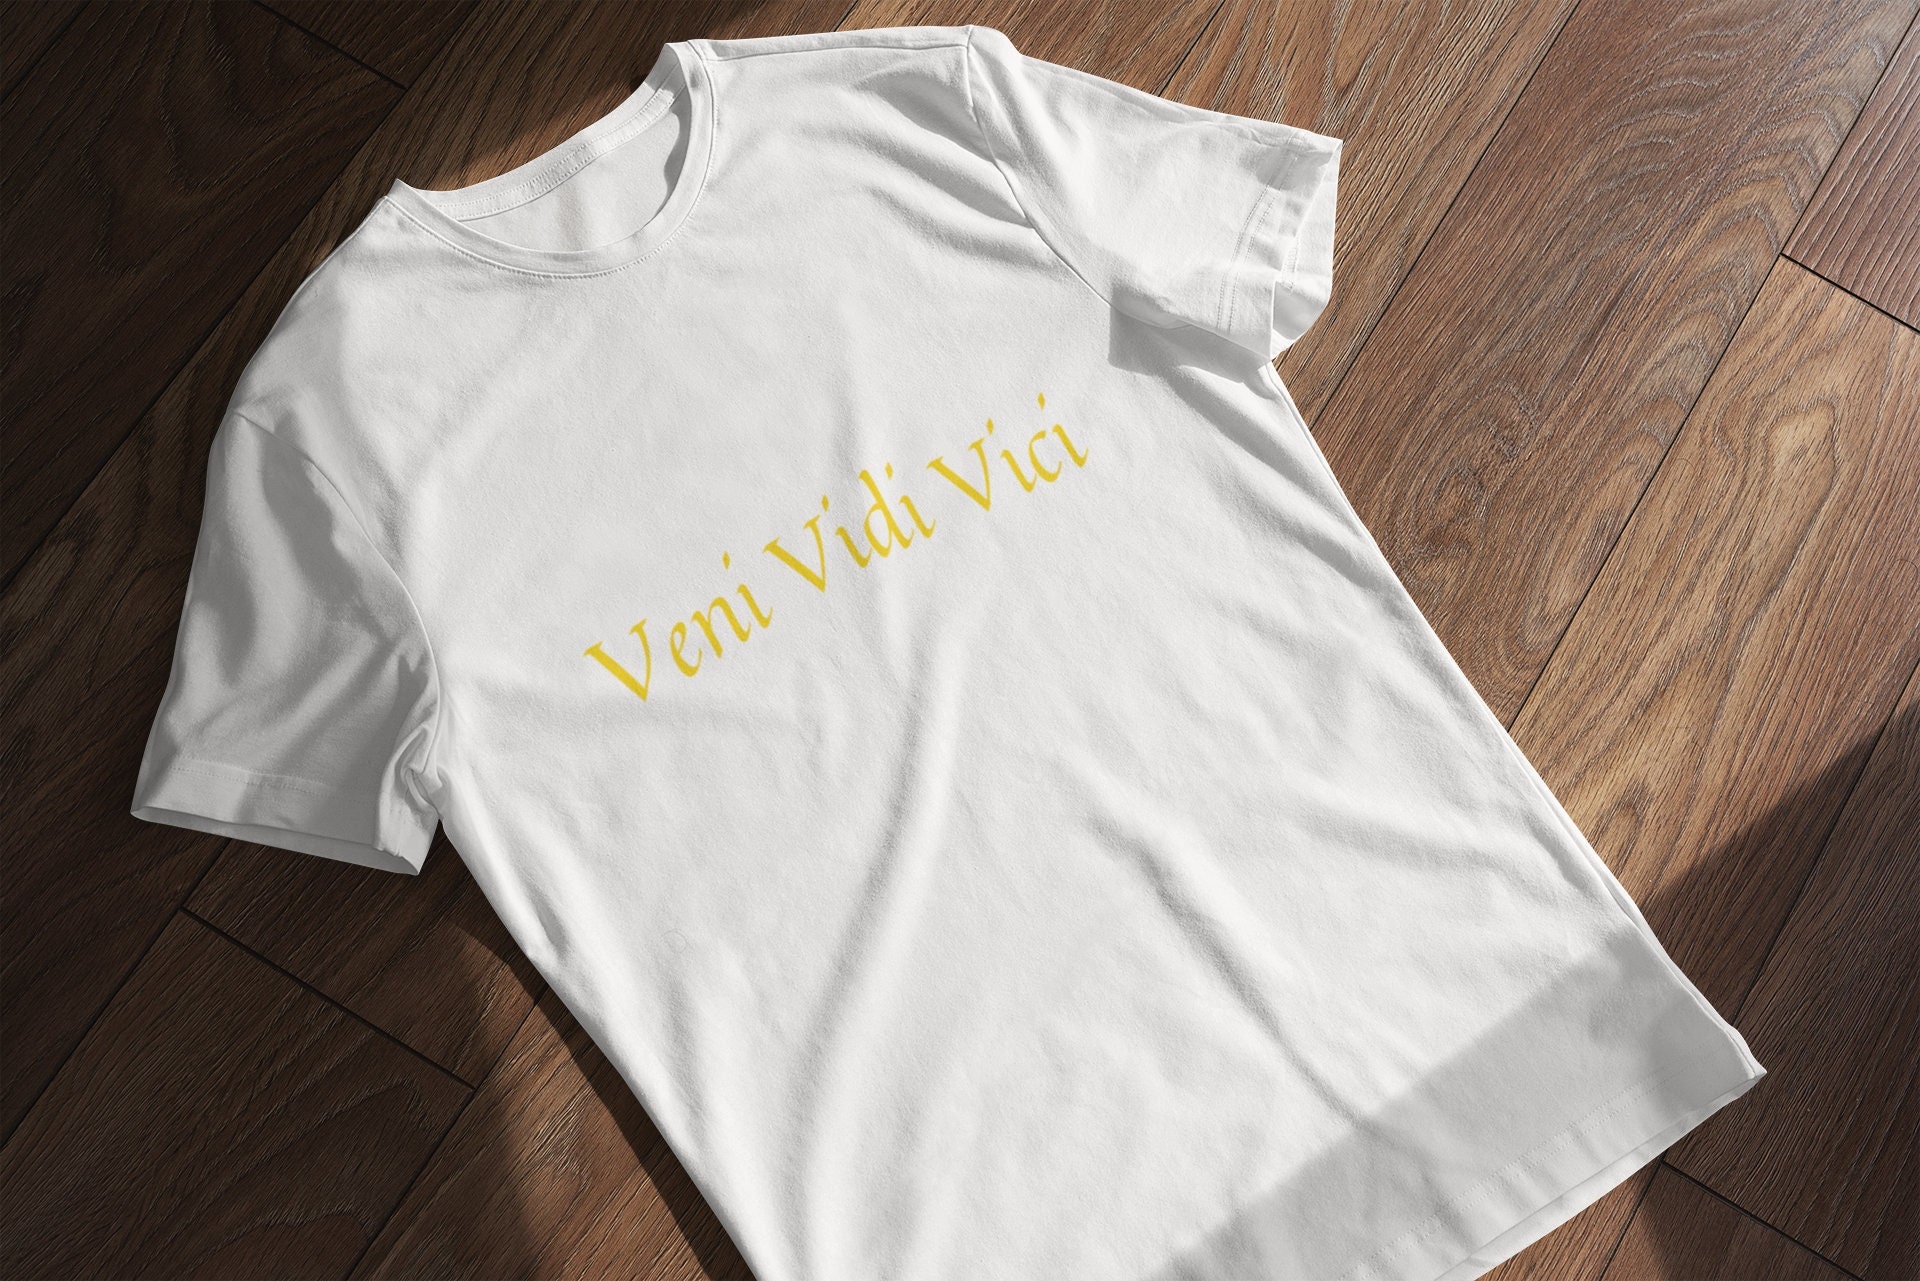 Veni Vidi Vici Essential T-Shirt for Sale by RossDillon